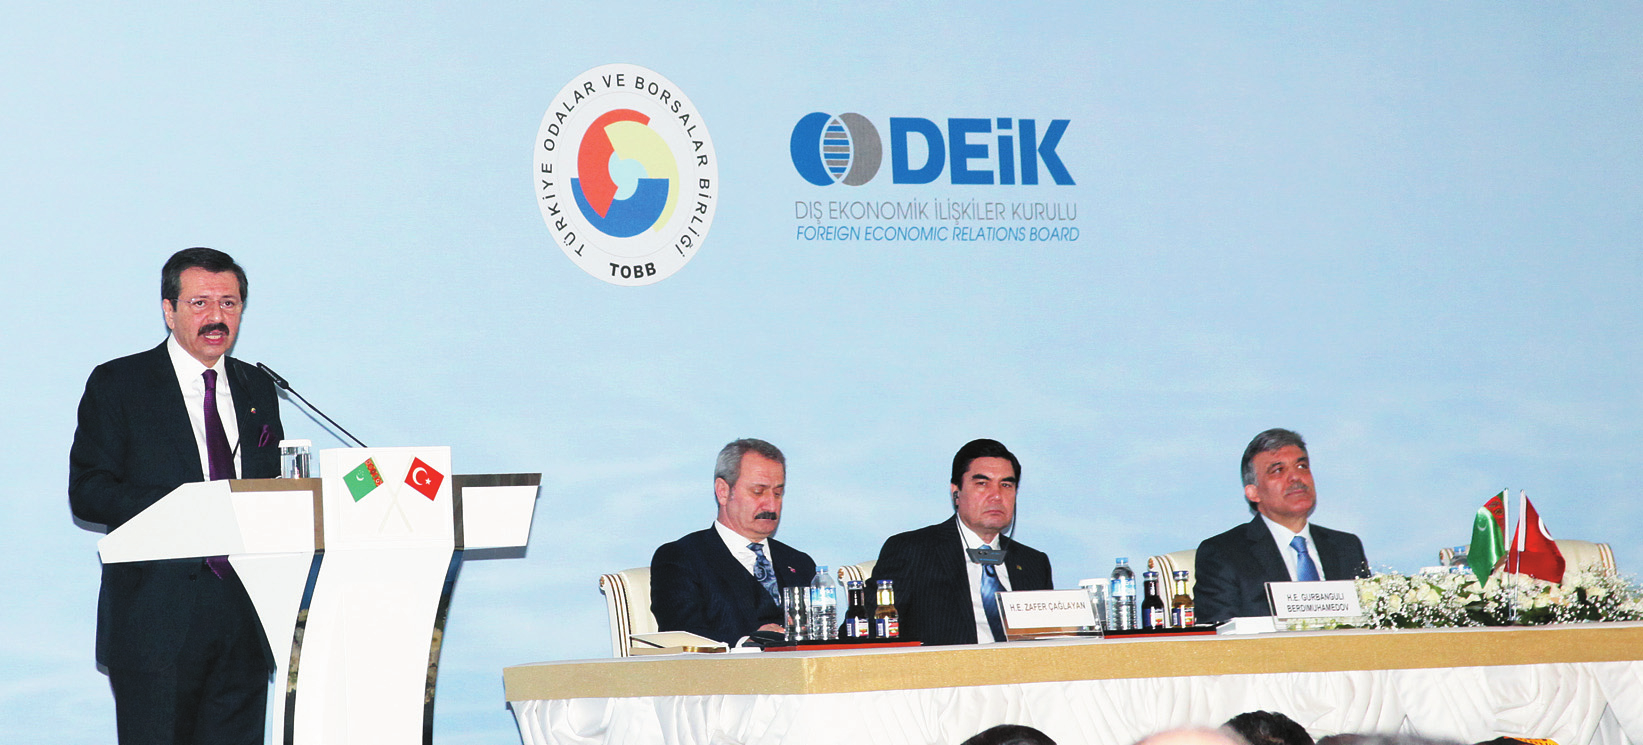 ÜLKE > > Türk-Türkmen İş Forumu nda konuşan TOBB/ DEİK Başkanı M. Rifat Hisarcıklıoğlu, Türkmen halkı artık, özgürlük ve zenginliğin birlikte ilerleyeceğini biliyor dedi. biliriz.